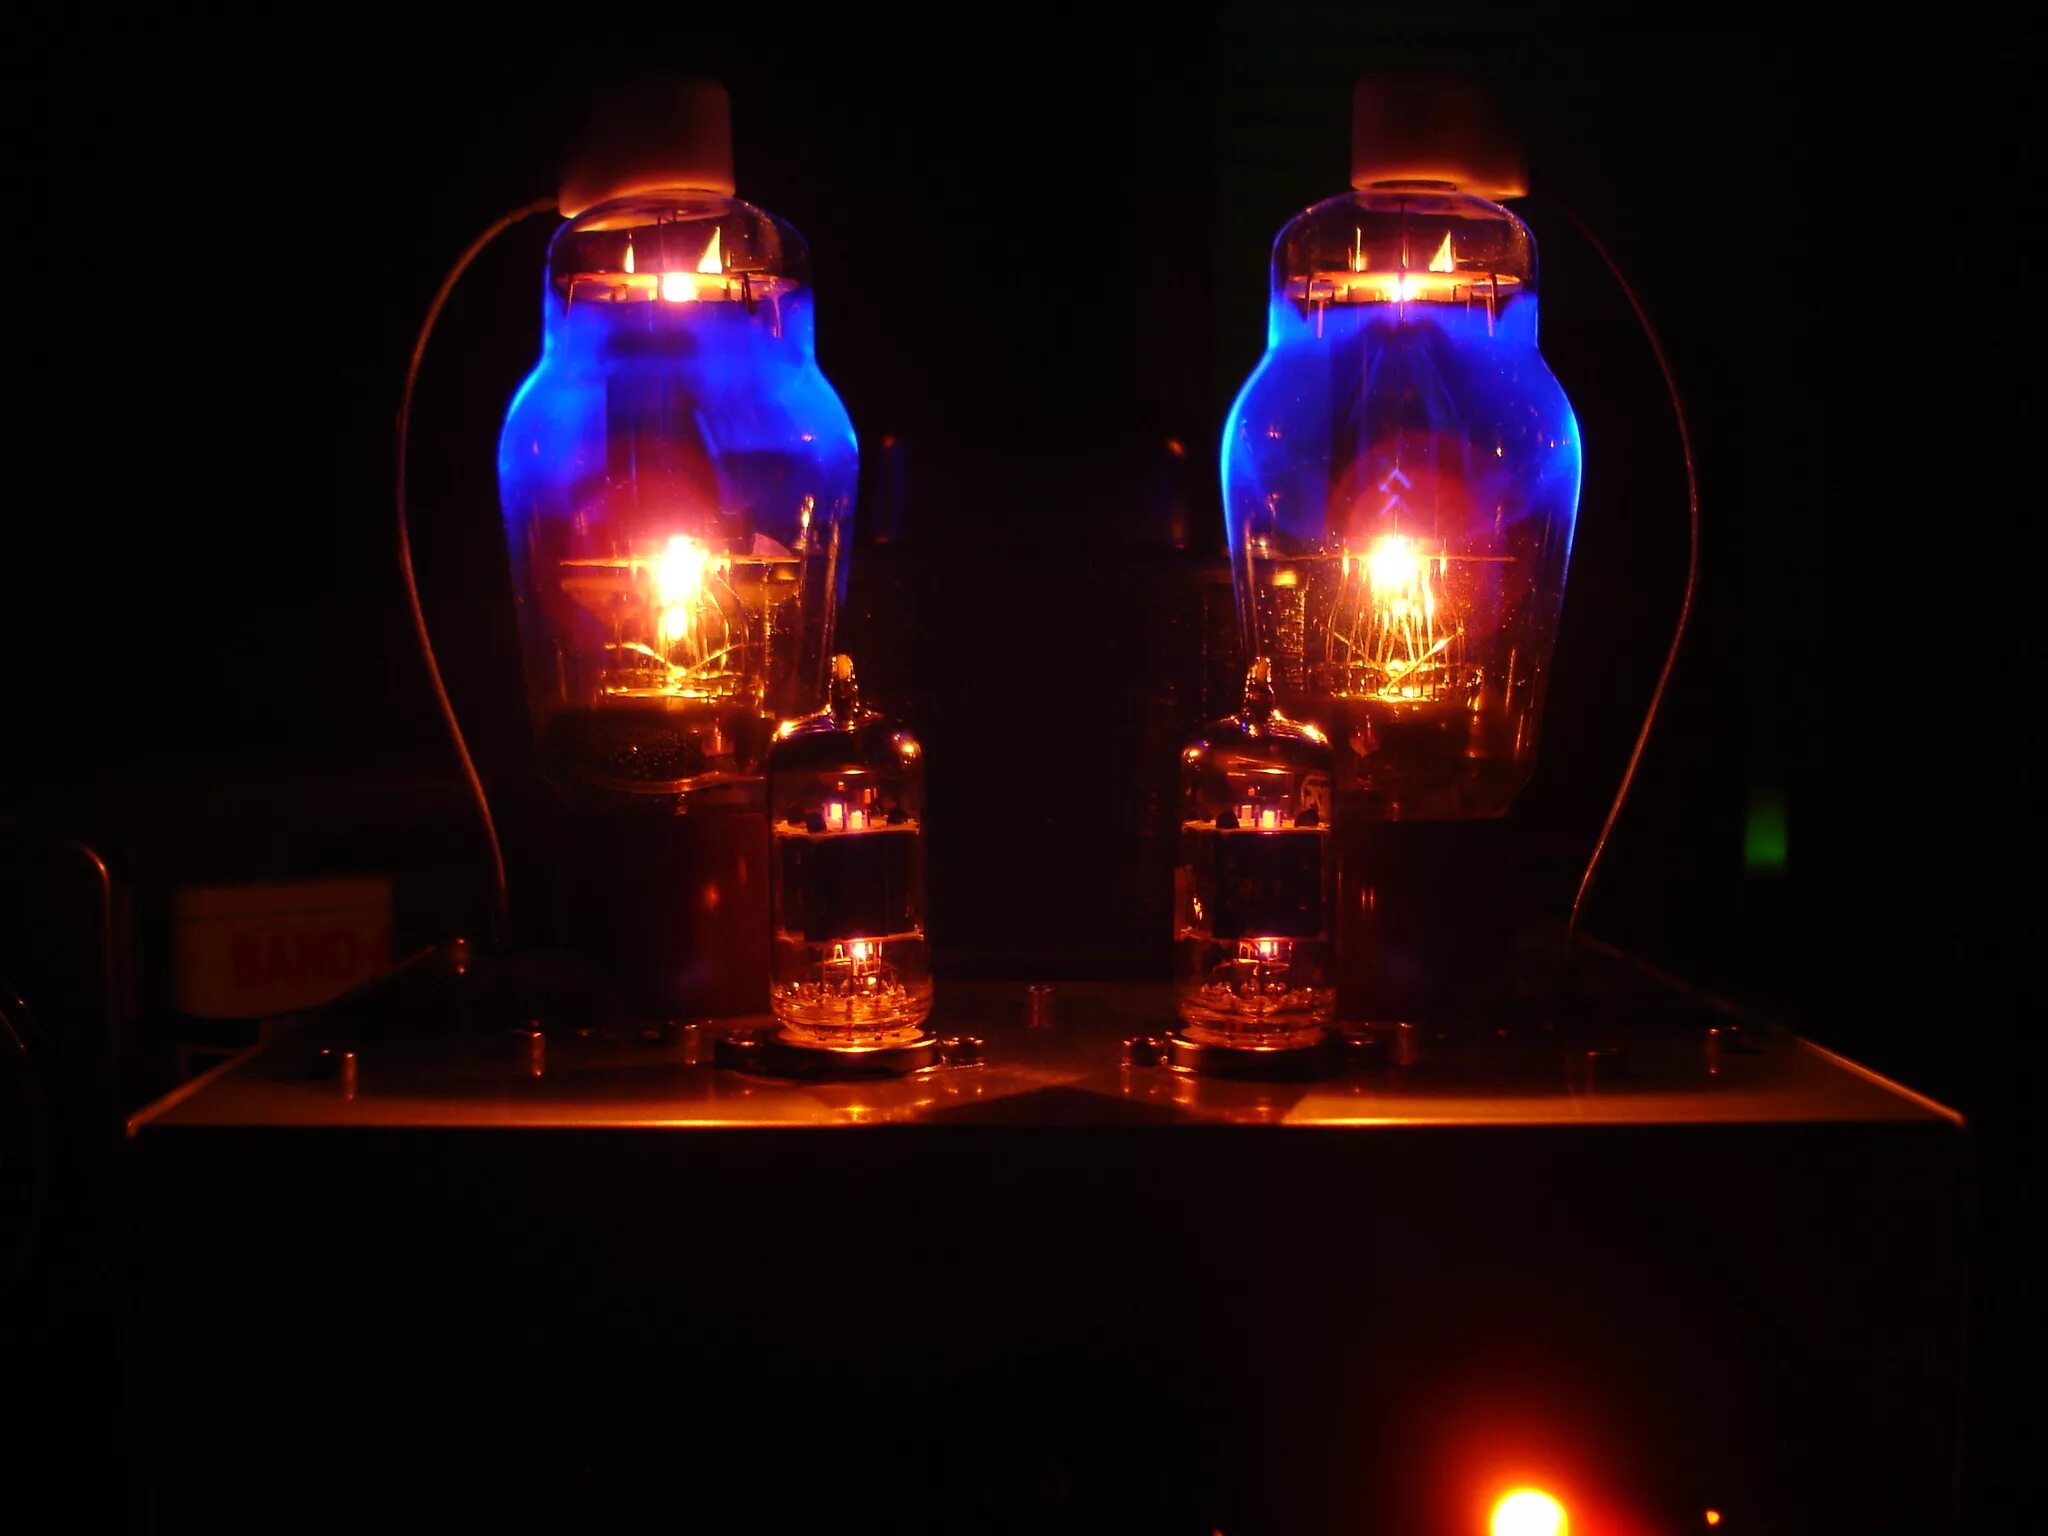 Ламповый усилитель Lotus-70l84. Ламповый усилитель макинтош в темноте. Ламповый свет. Свечение радиоламп. Подсвеченные лампочками